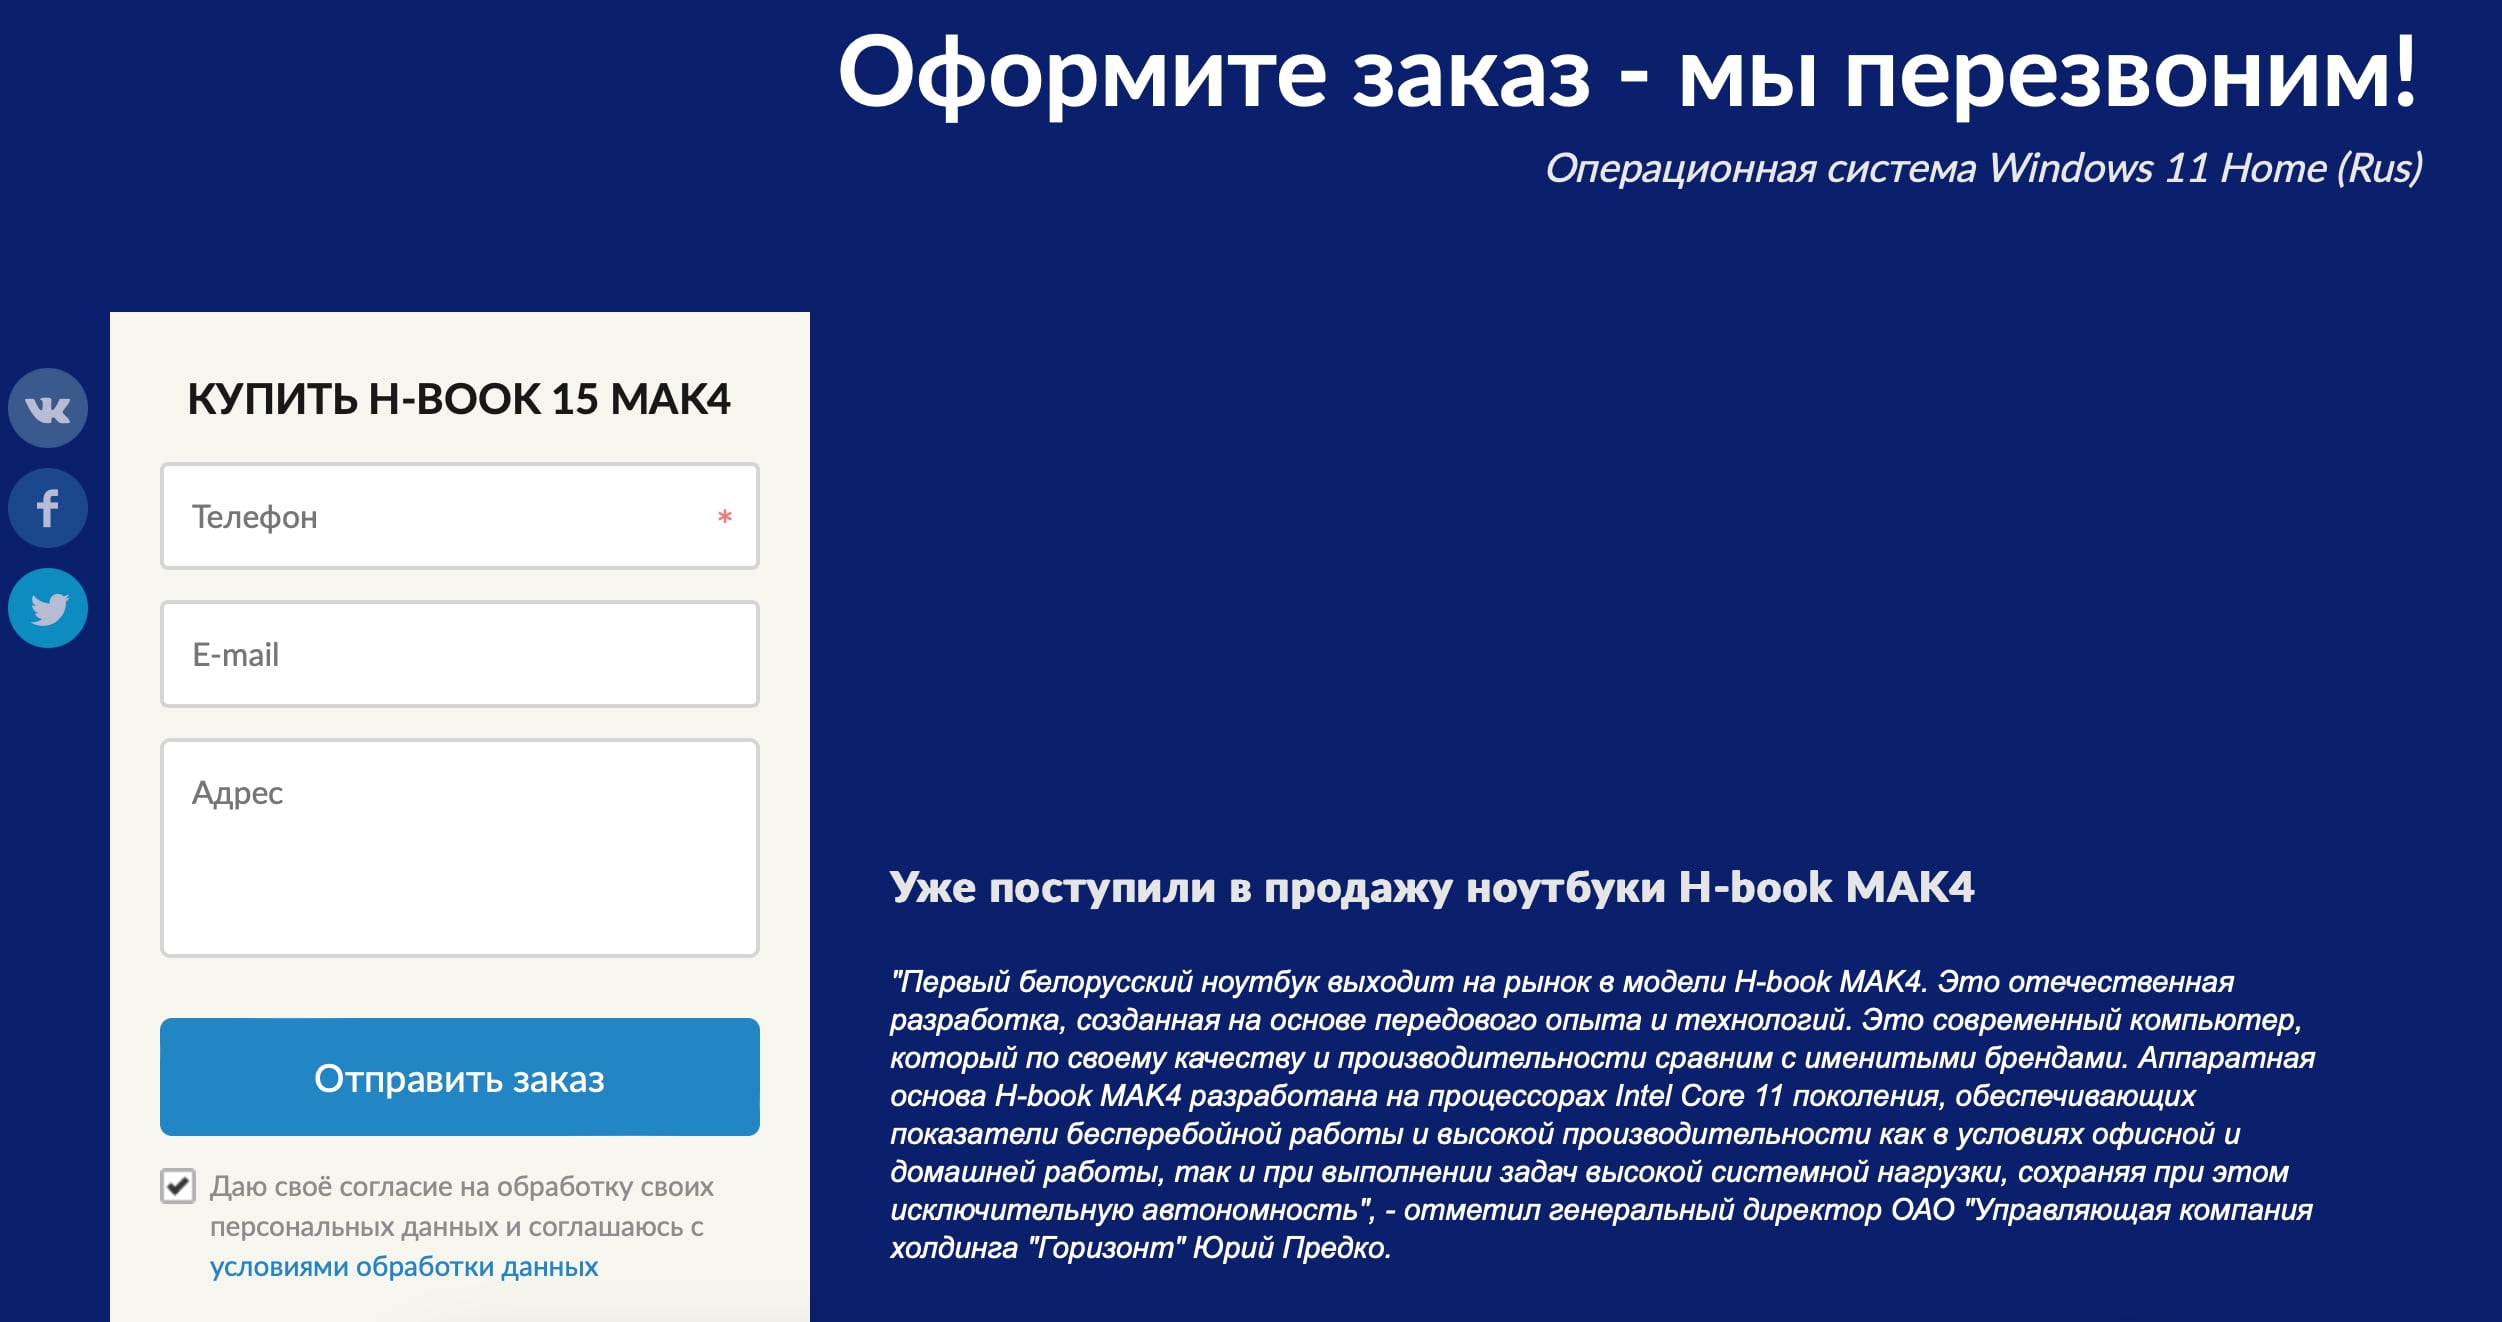 Белорусские ноутбуки Горизонт начали официально продаваться в России. Пока только онлайн